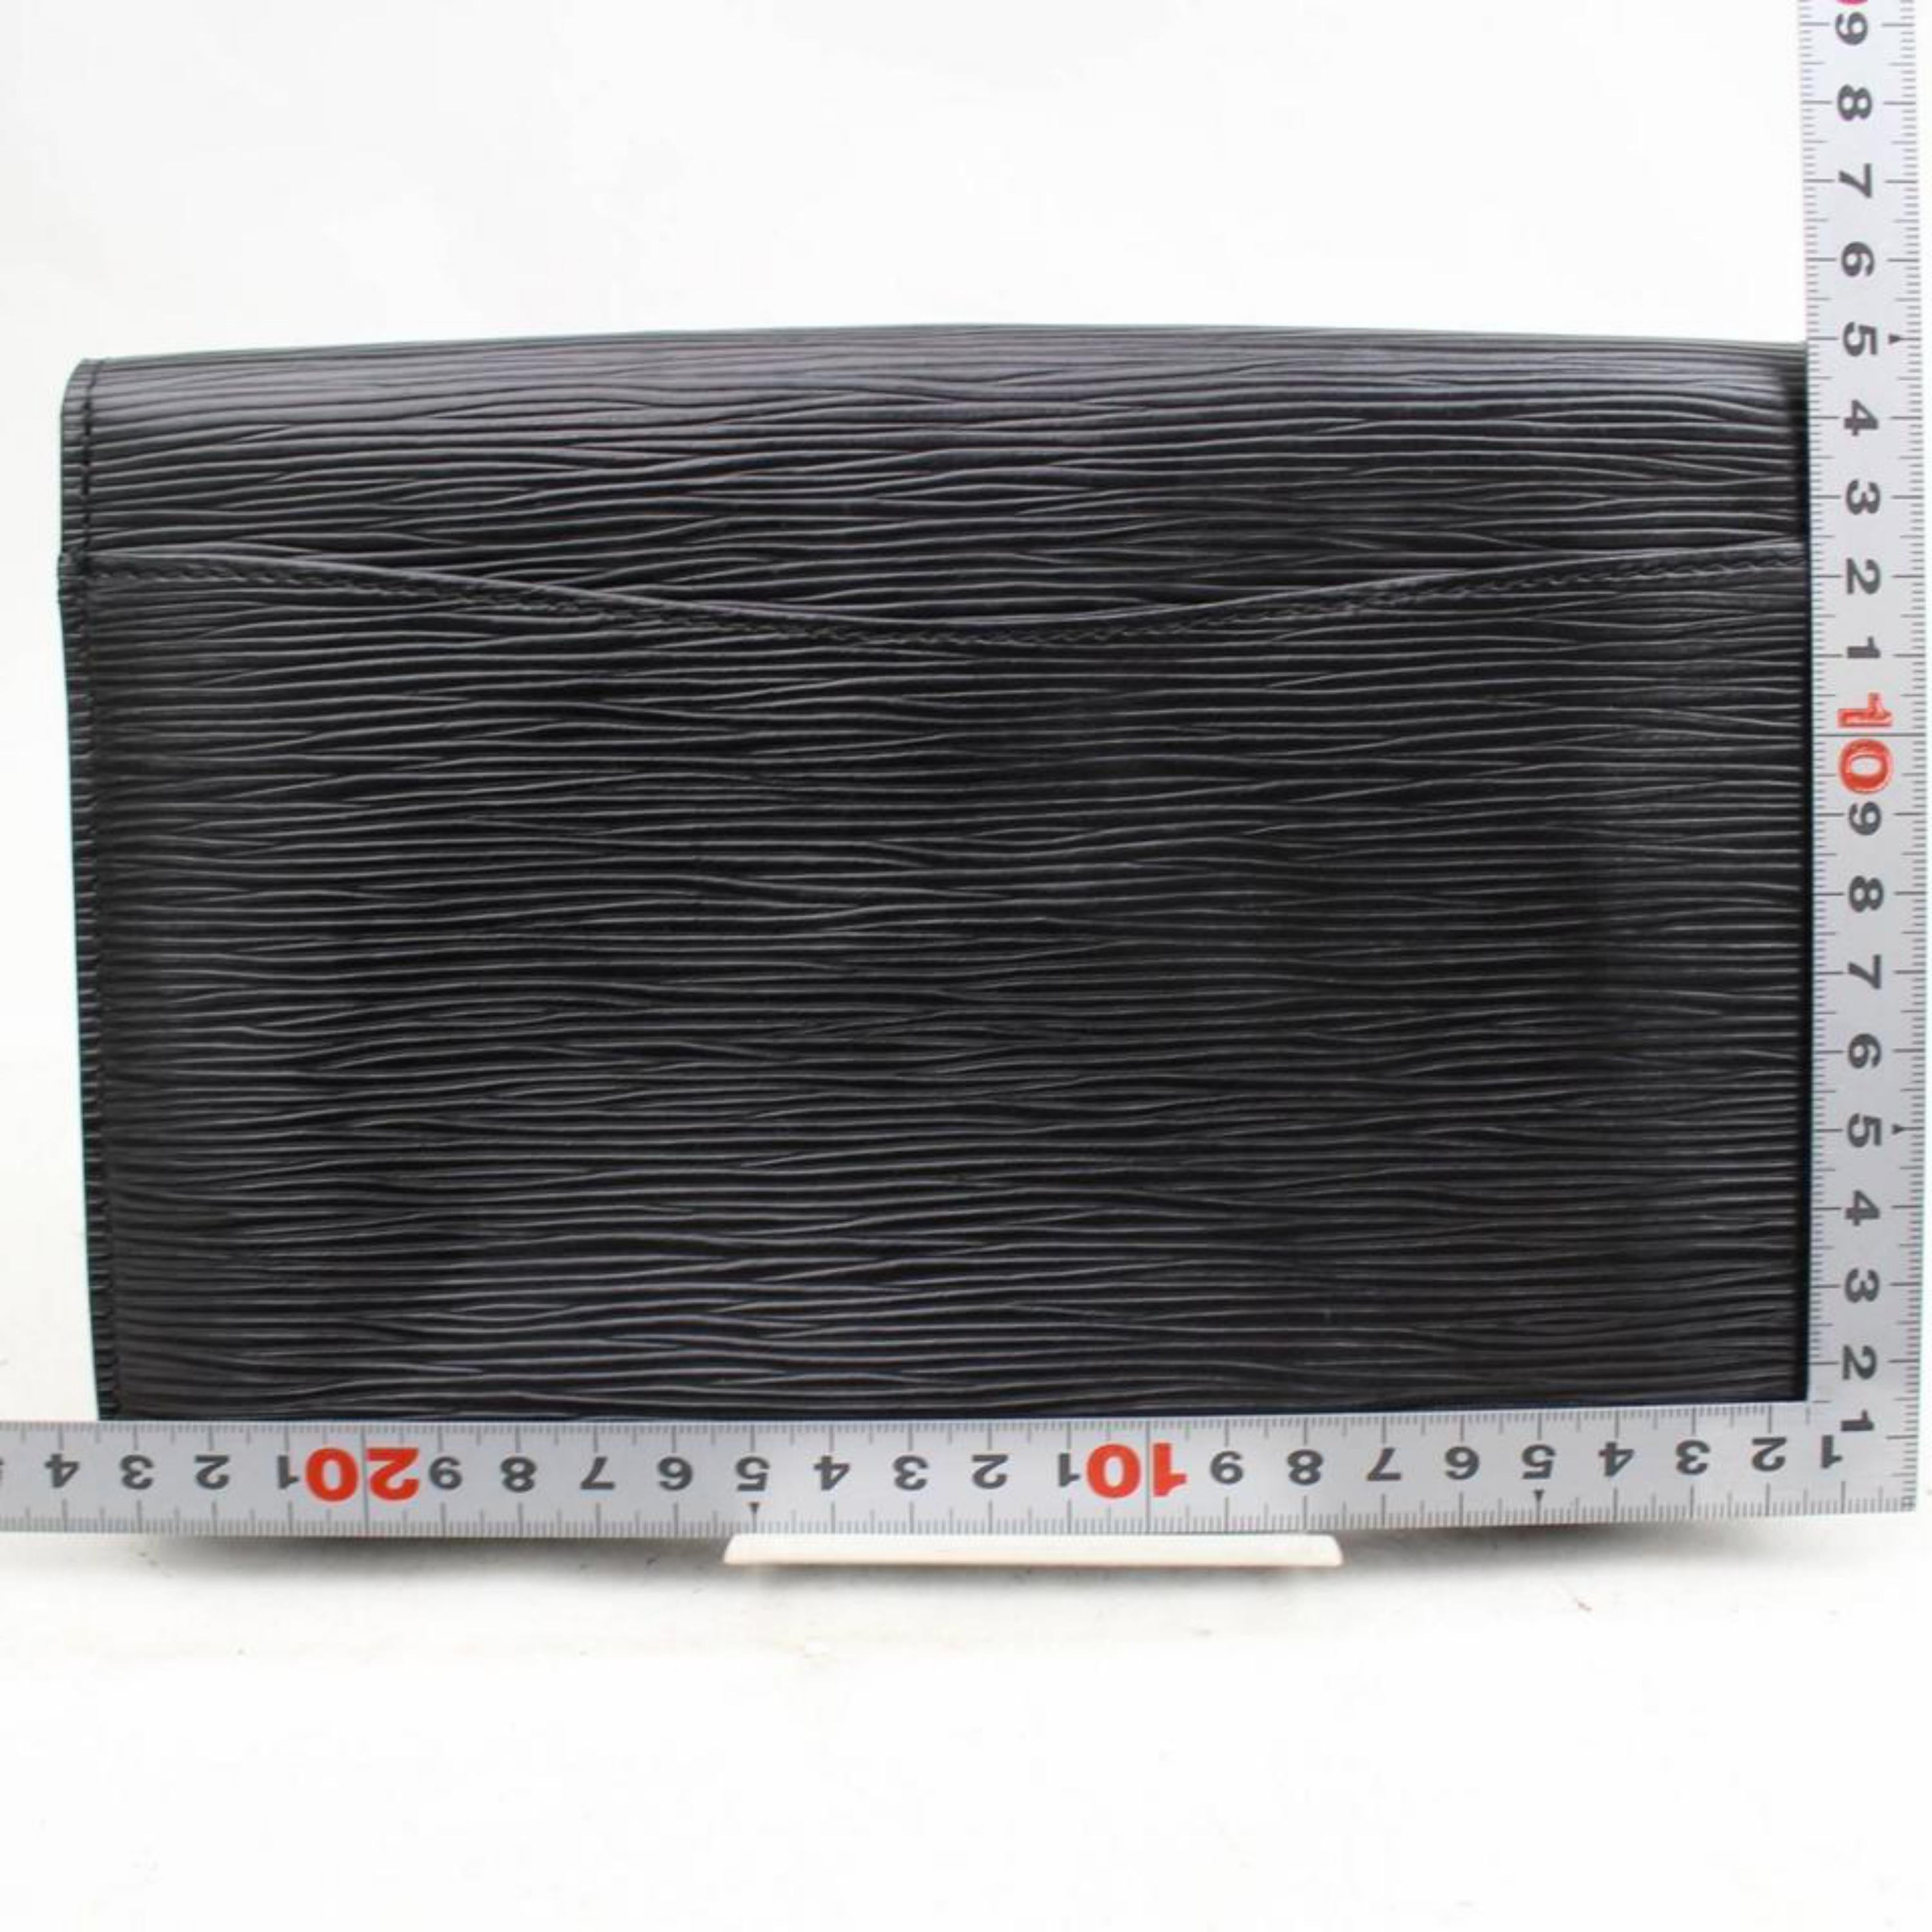 Louis Vuitton Montaigne Pochette Noir Envelope 868807 Black Leather Clutch For Sale 1